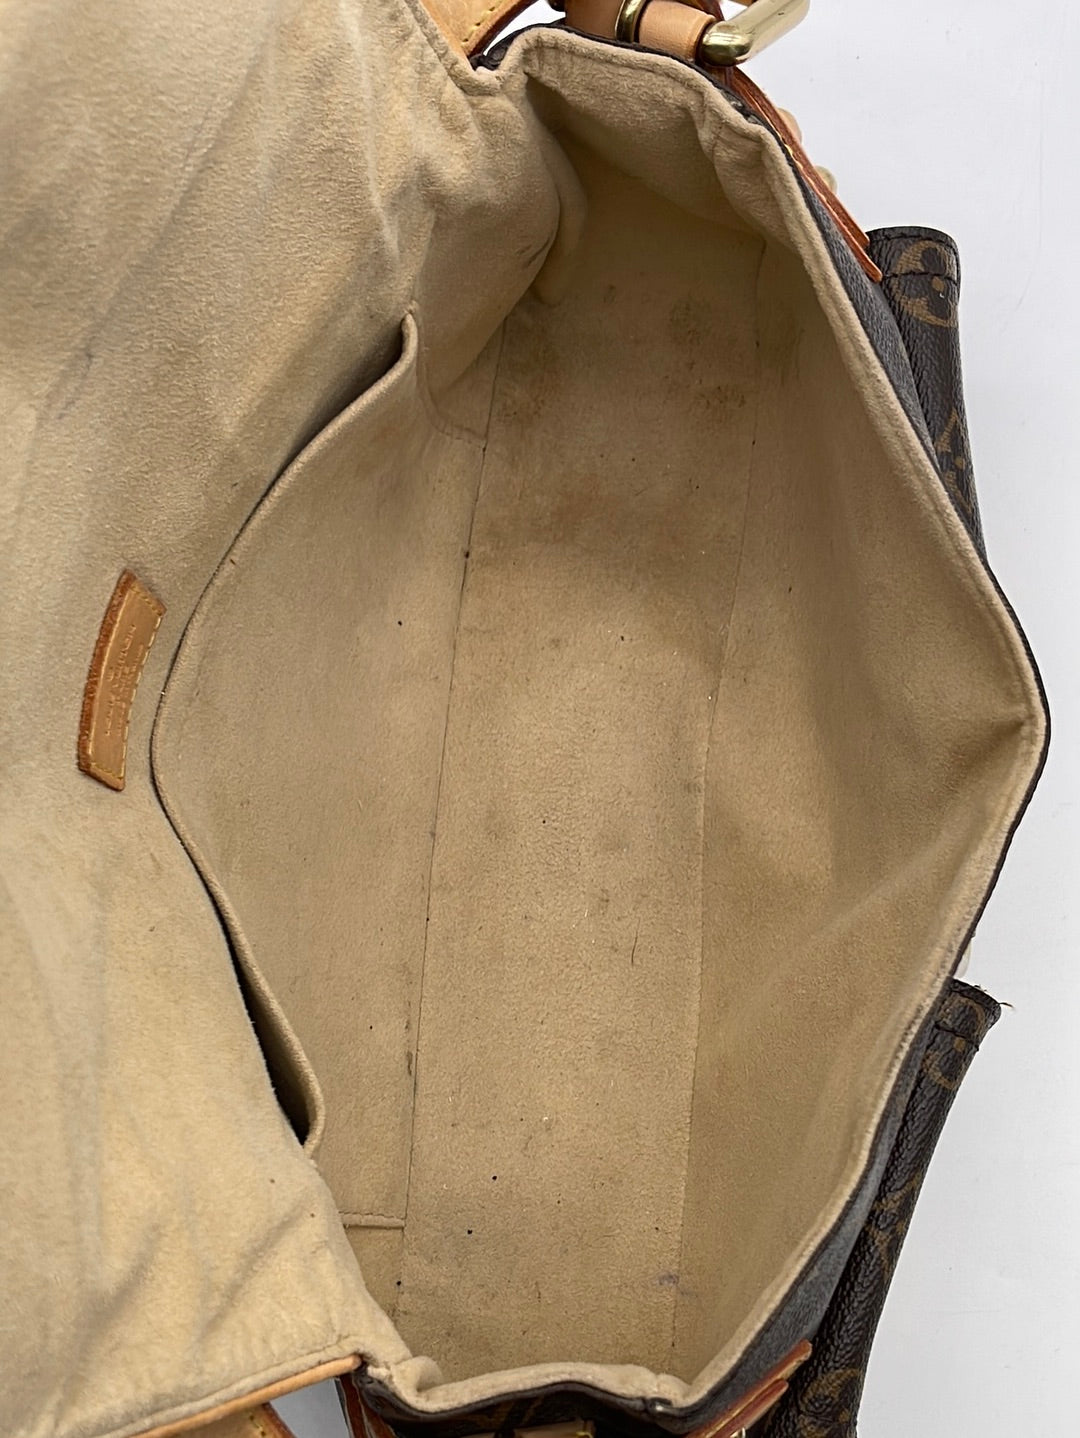 Louis Vuitton '05 'Hudson' PM Double Pocket Shoulder Bag – The